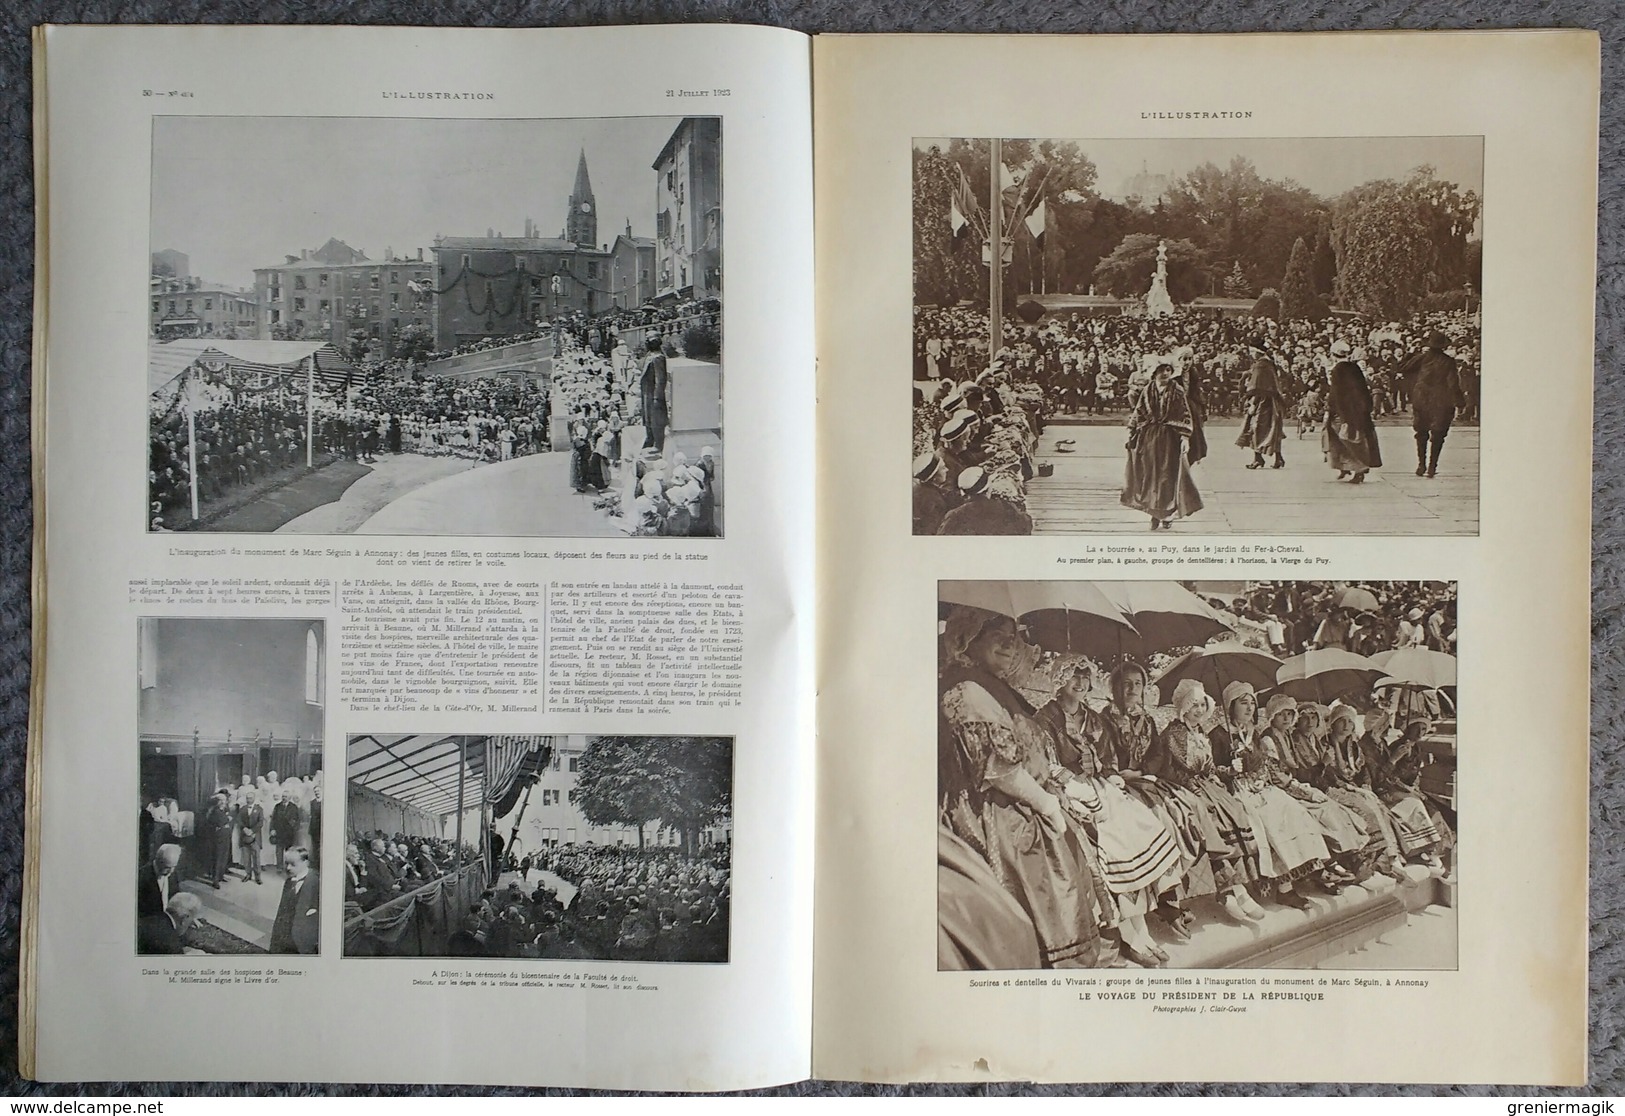 L'Illustration 4194 21 juillet 1923 Banditisme en Chine/Bey de Tunis/Maroc/Suède/Sauvetage maritime/Allos/Julien Tinayre